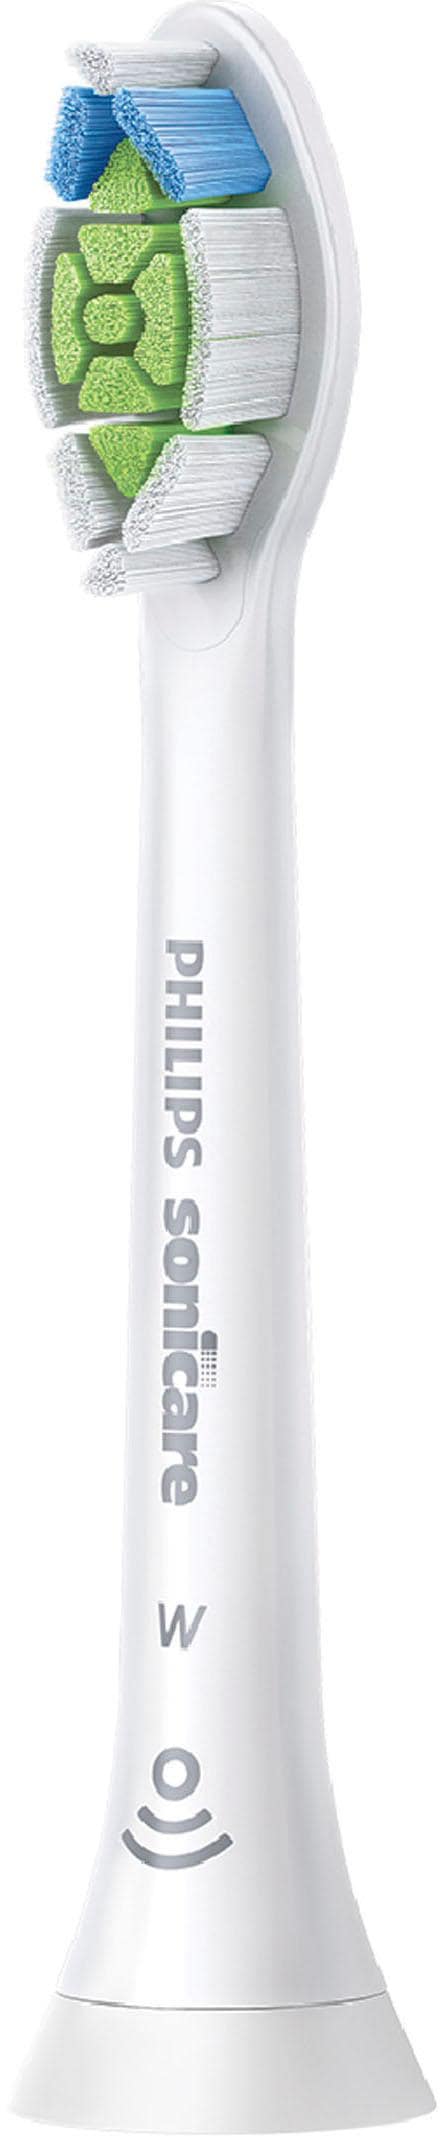 Philips Sonicare Elektrische Zahnbürste St. Garantie »ProtectiveClean mit Schallzahnbürste, 5100«, Drucksensor, 3 3 Aufsteckbürsten, 1 XXL Programme Jahren